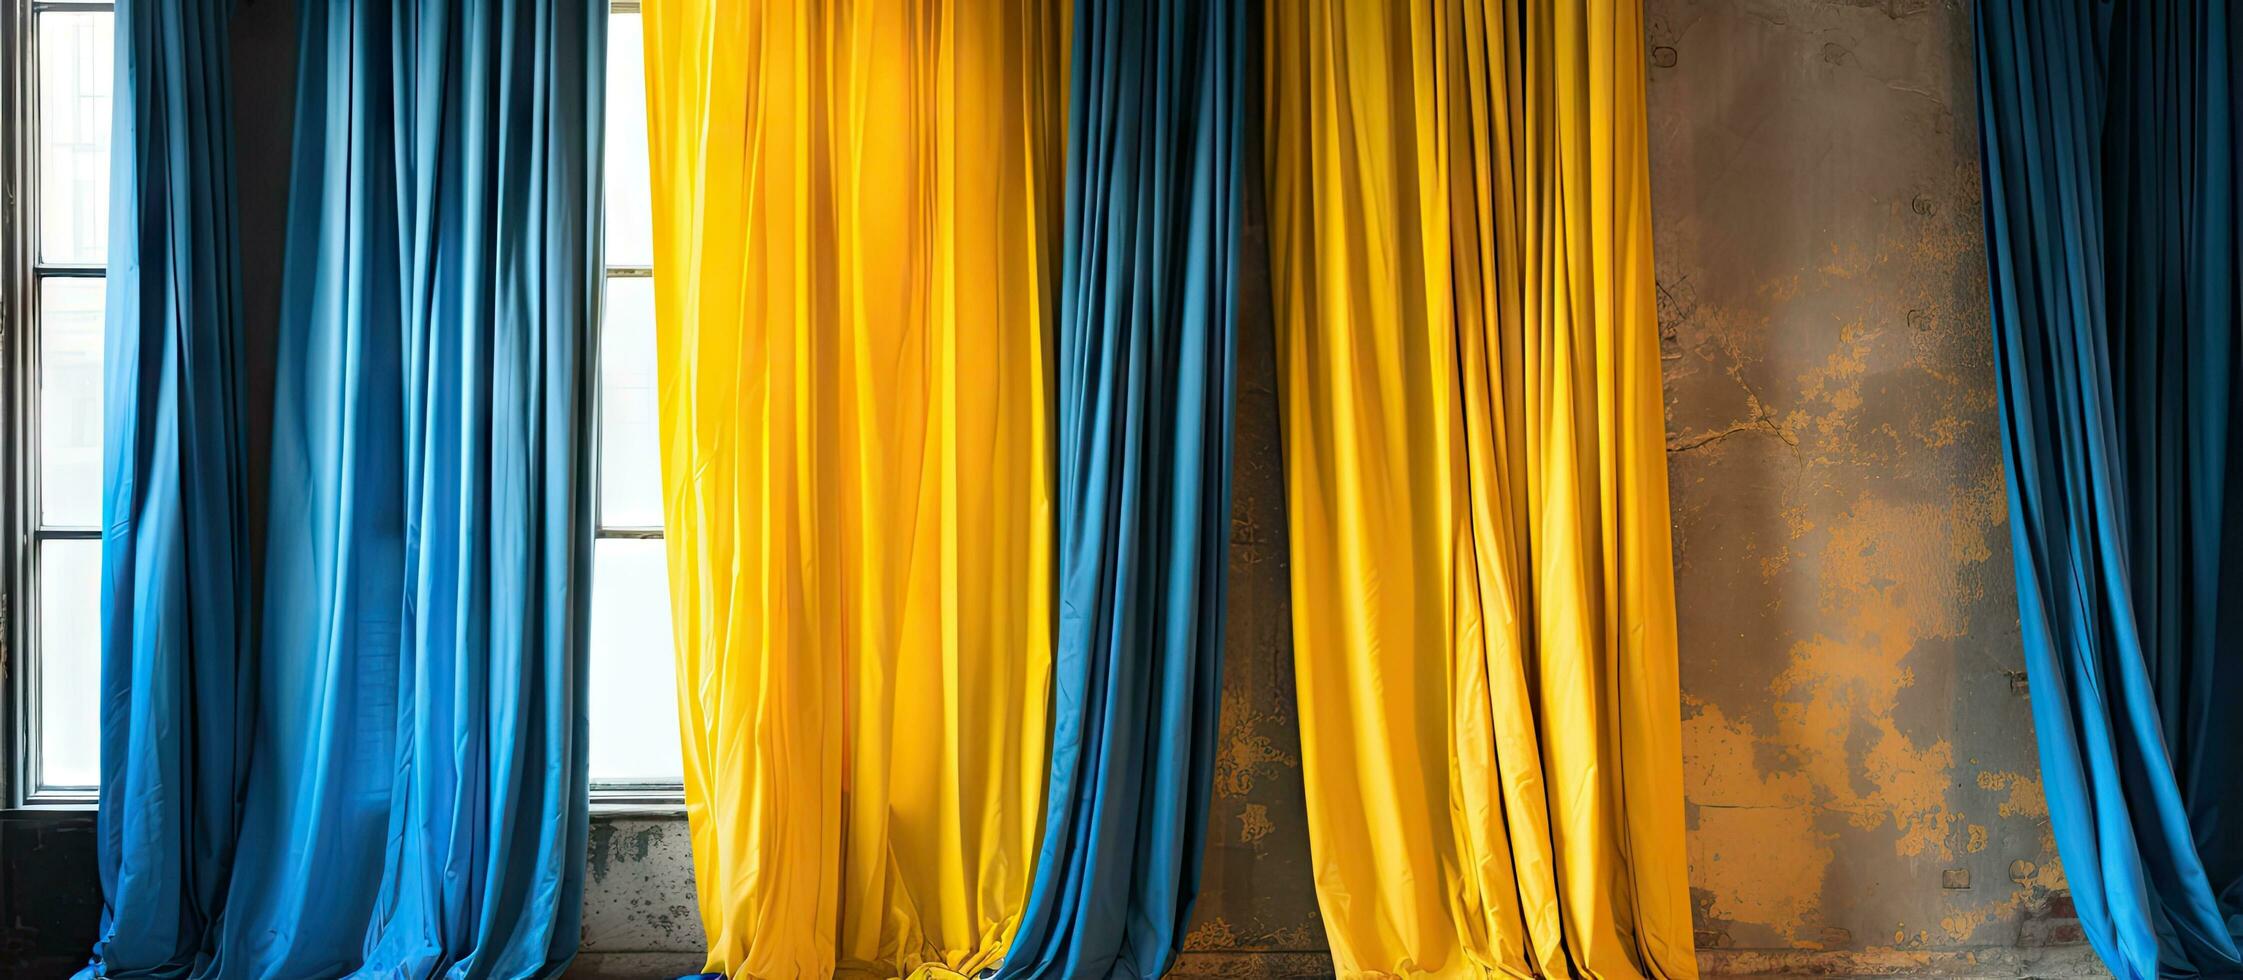 cortinas de amarillo y azul adornando un ventana foto